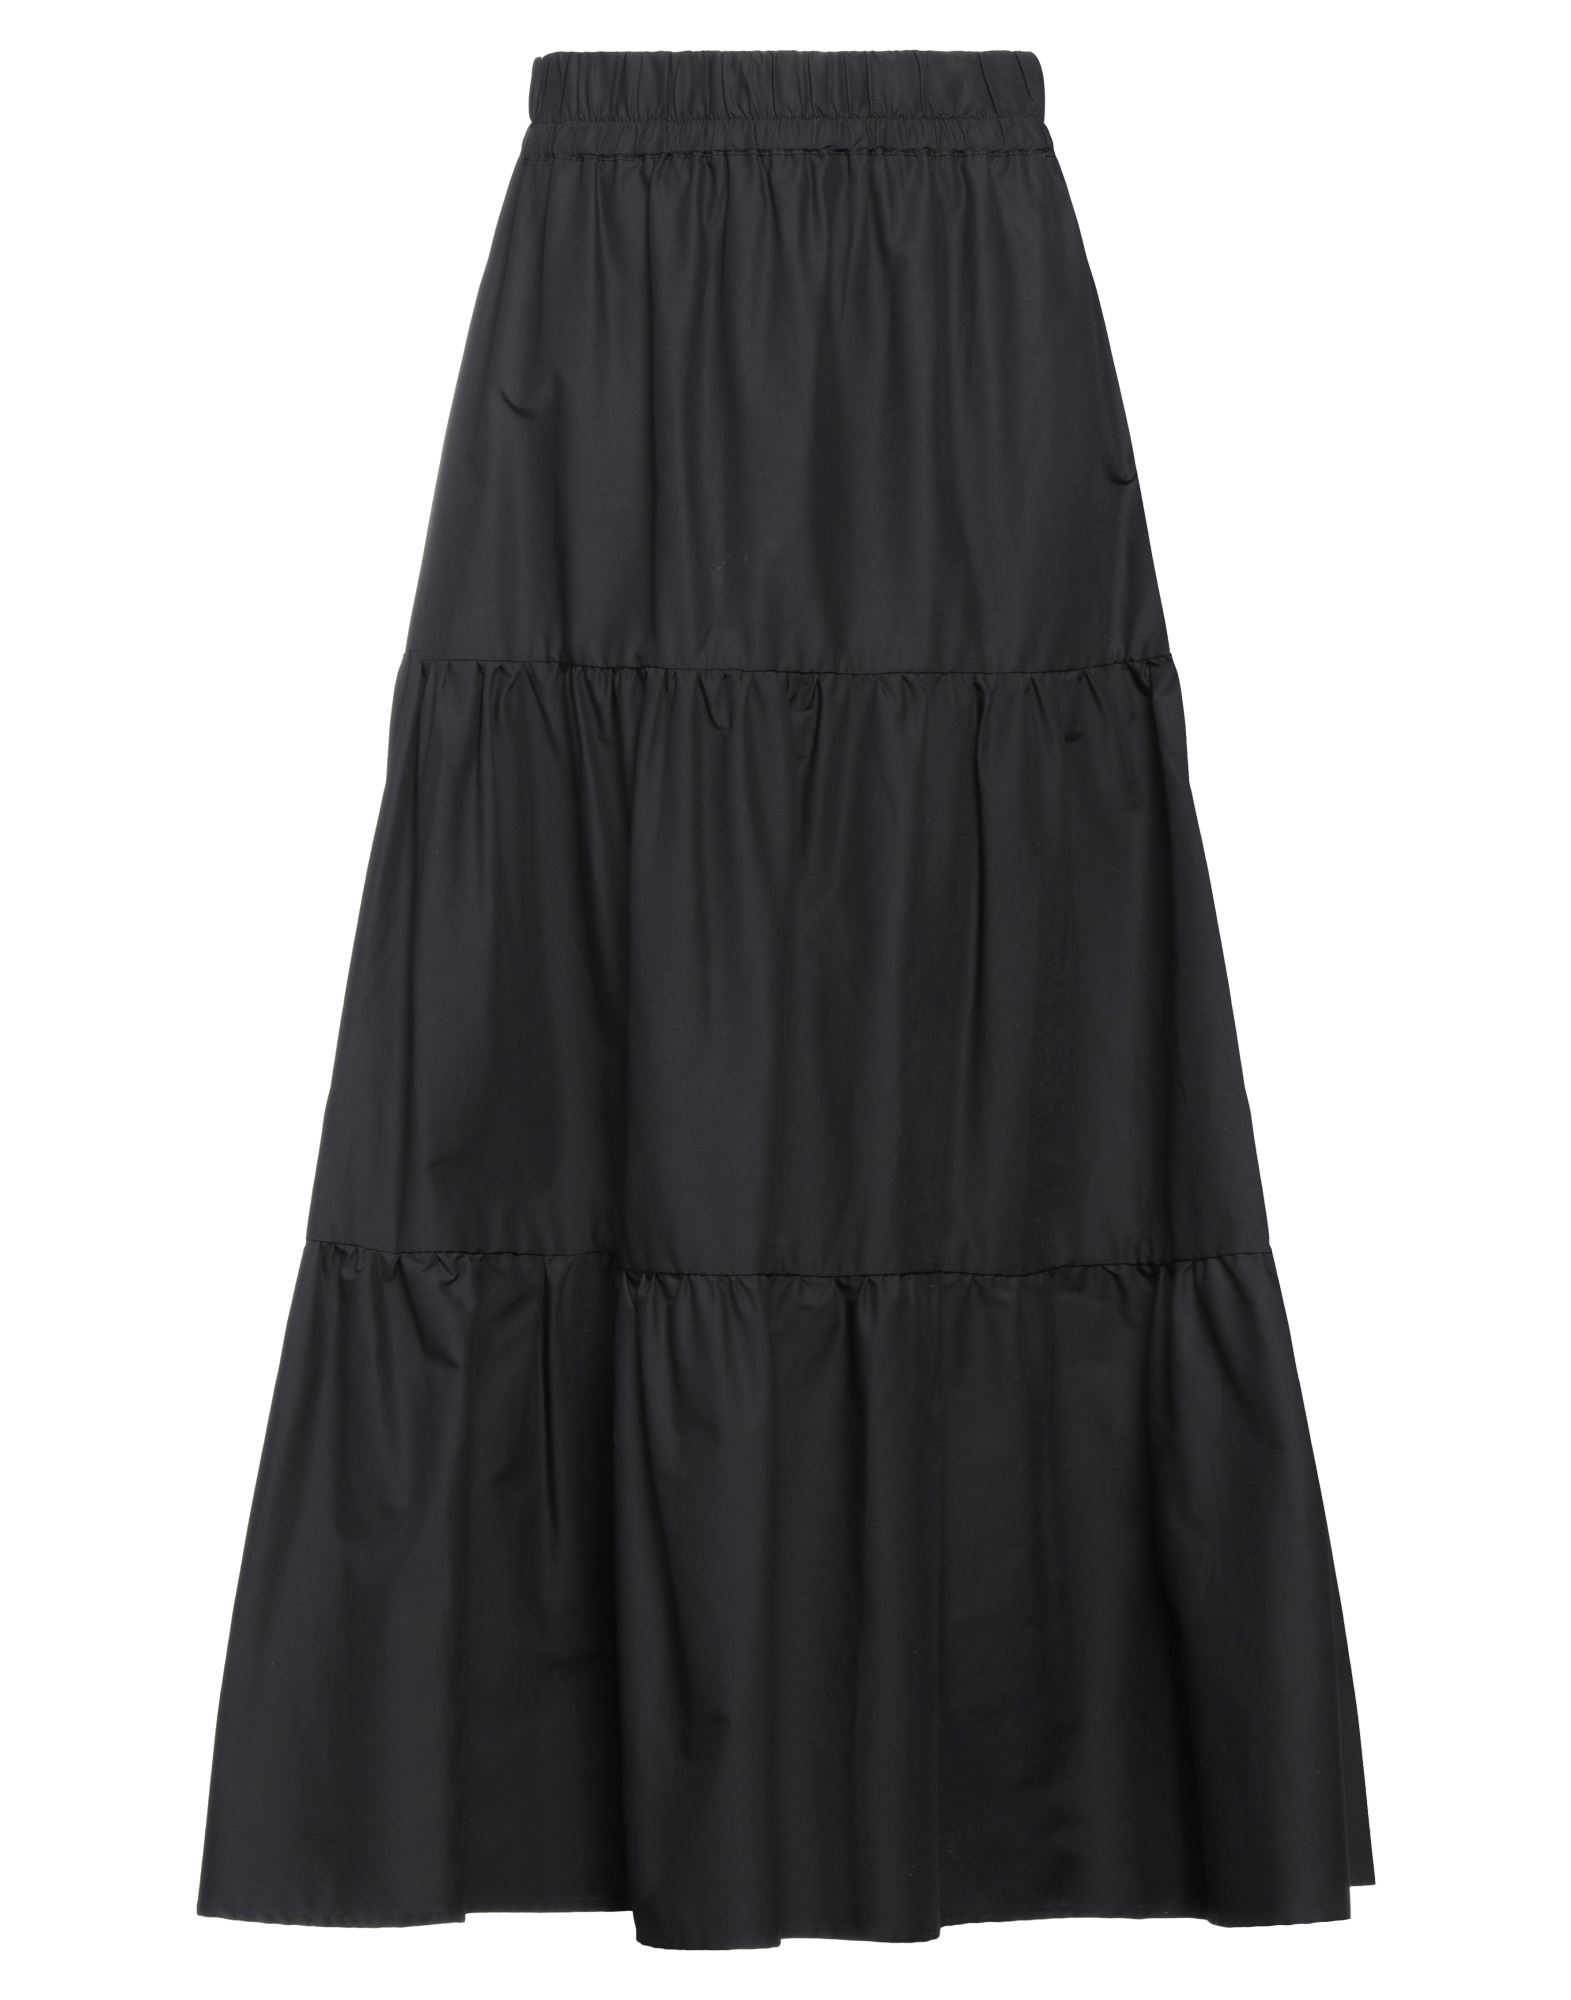 Emma & Gaia Woman Maxi Skirt Black Size 6 Cotton, Polyamide, Elastane